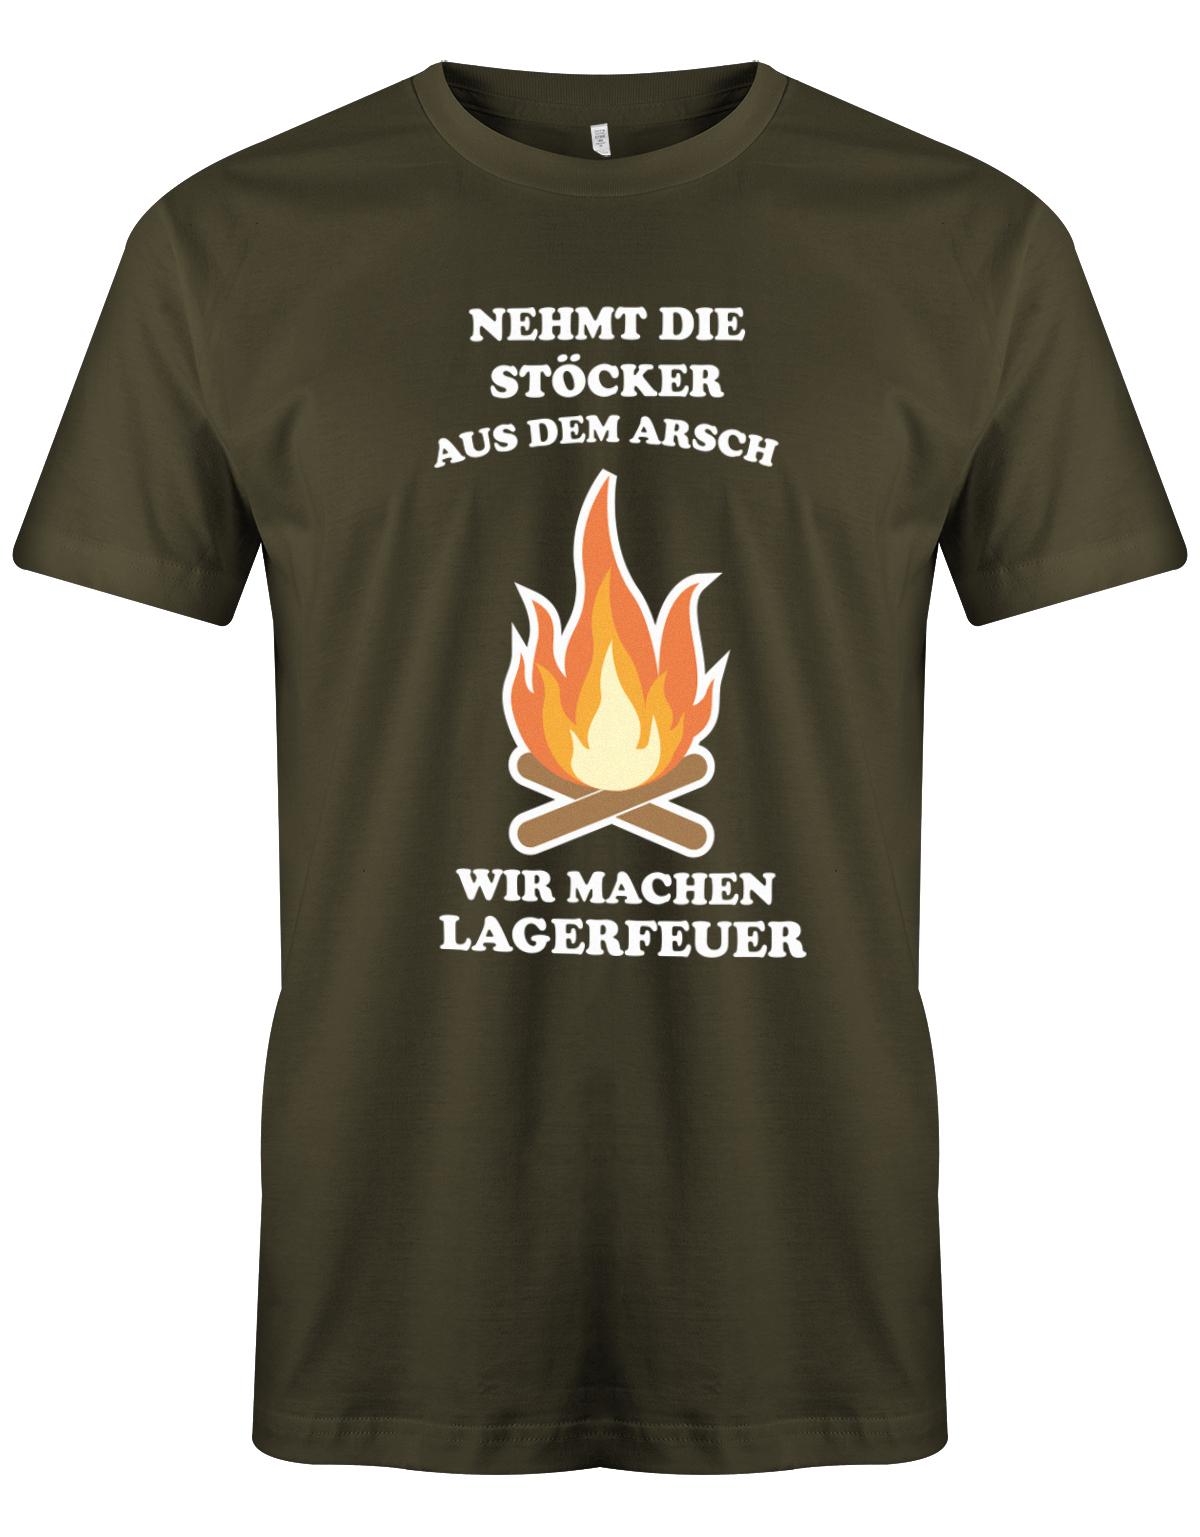 Nehmt-die-St-cker-aus-dem-Arsch-wir-machen-Lagerfeuer-Herren-Shirt-army